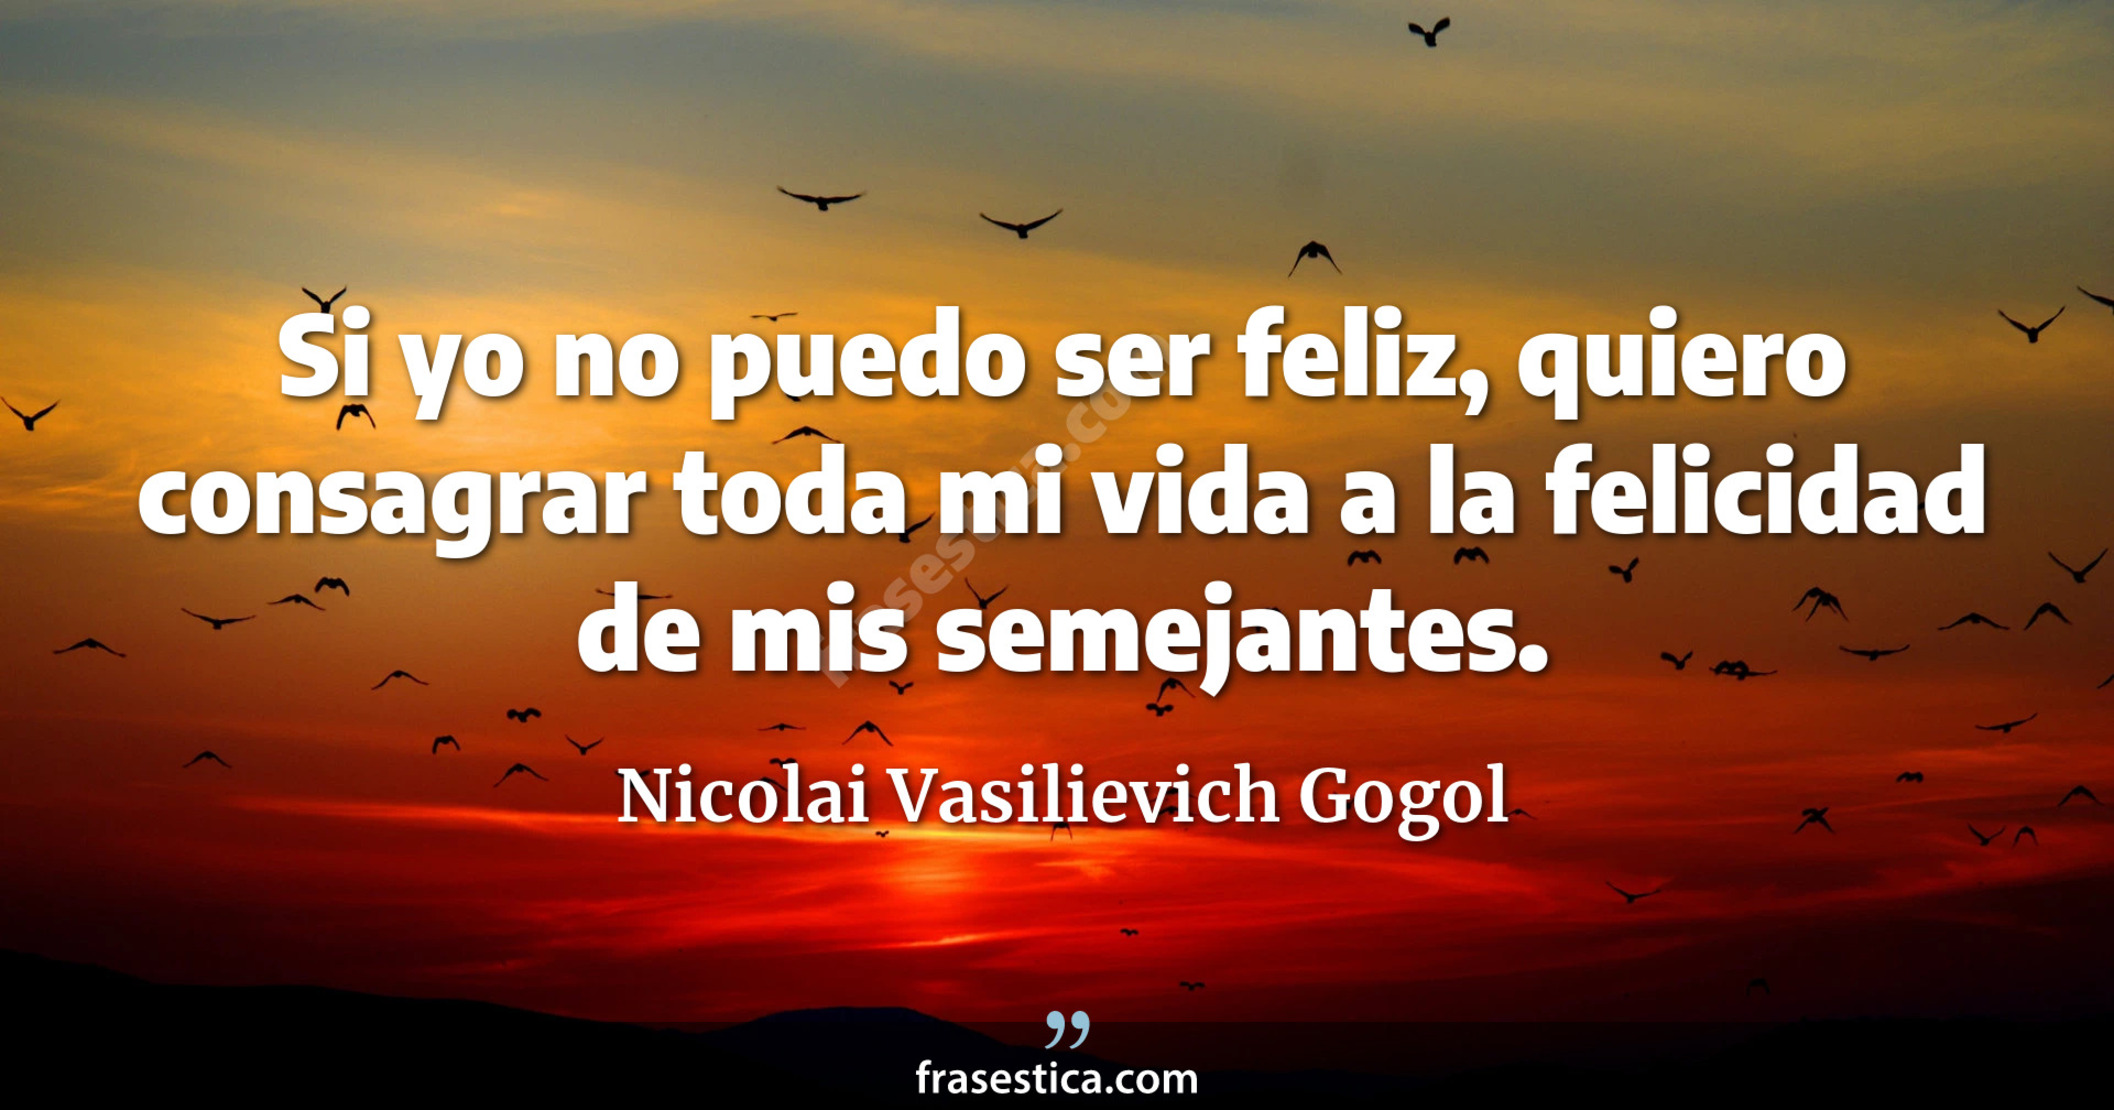 Si yo no puedo ser feliz, quiero consagrar toda mi vida a la felicidad de mis semejantes. - Nicolai Vasilievich Gogol